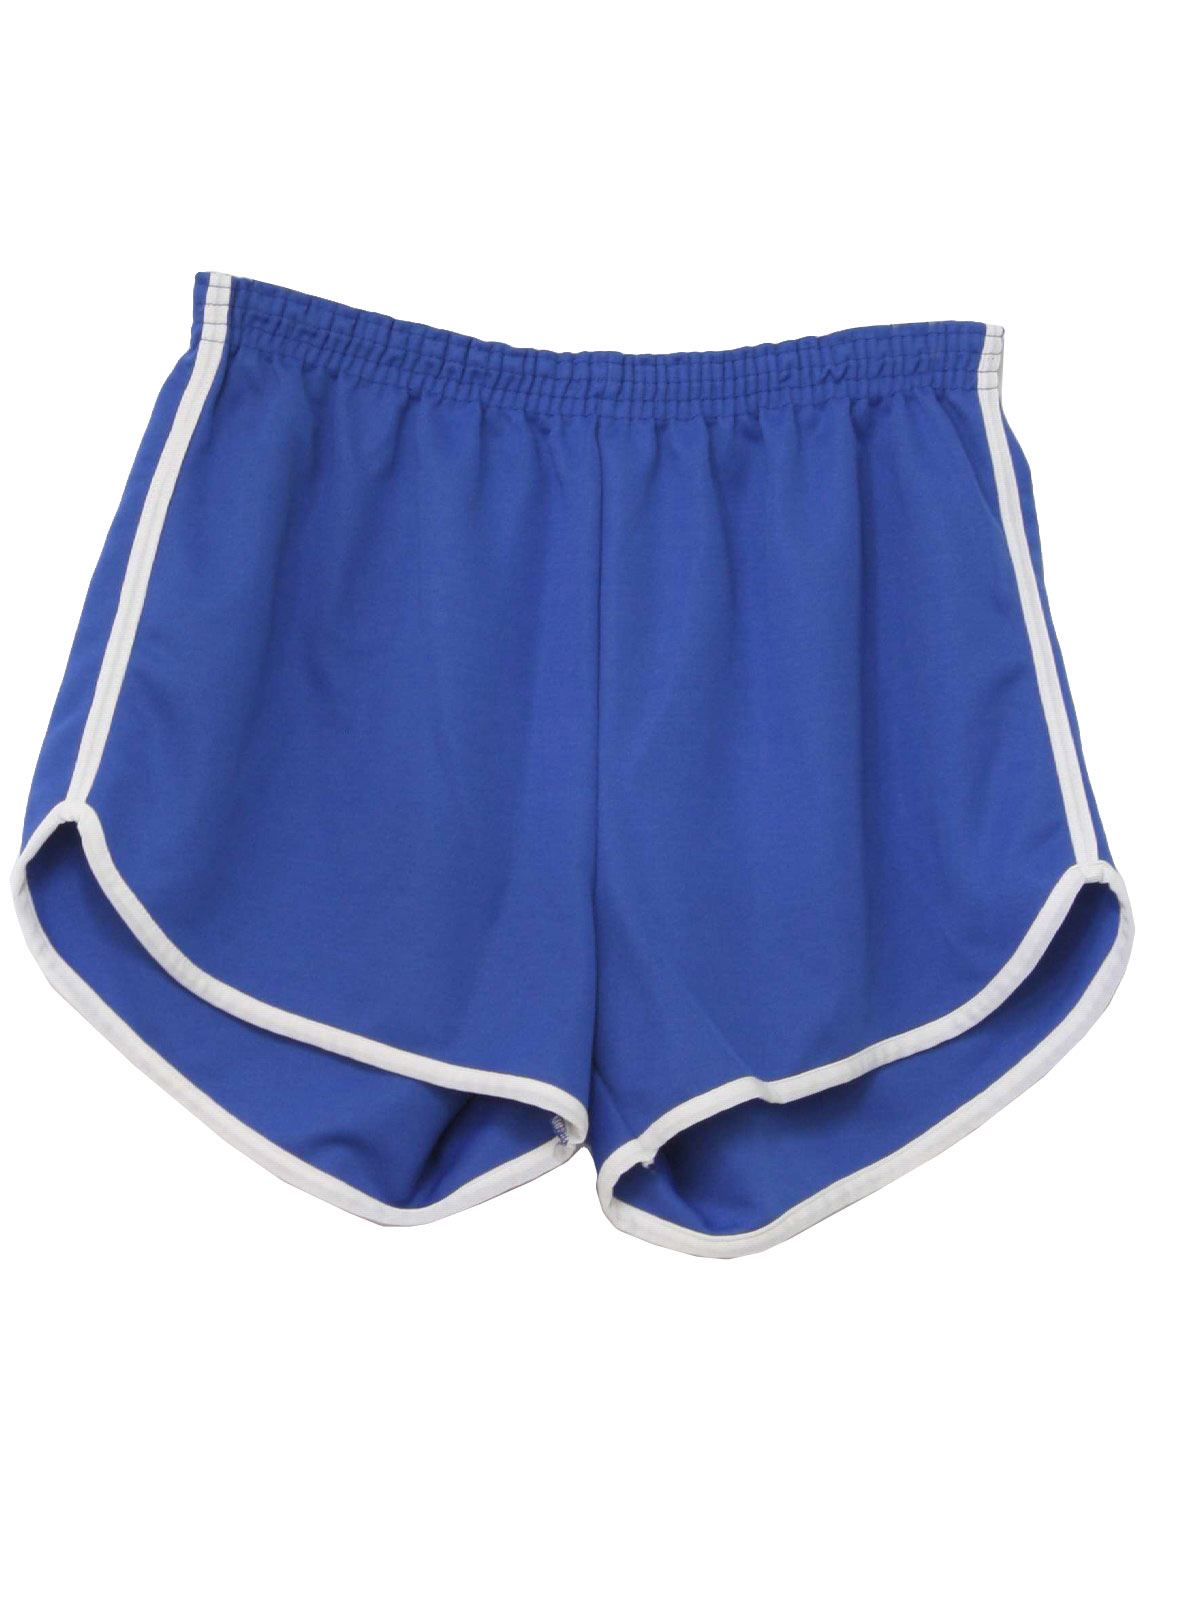 Vintage Men's Shorts - Blue - L